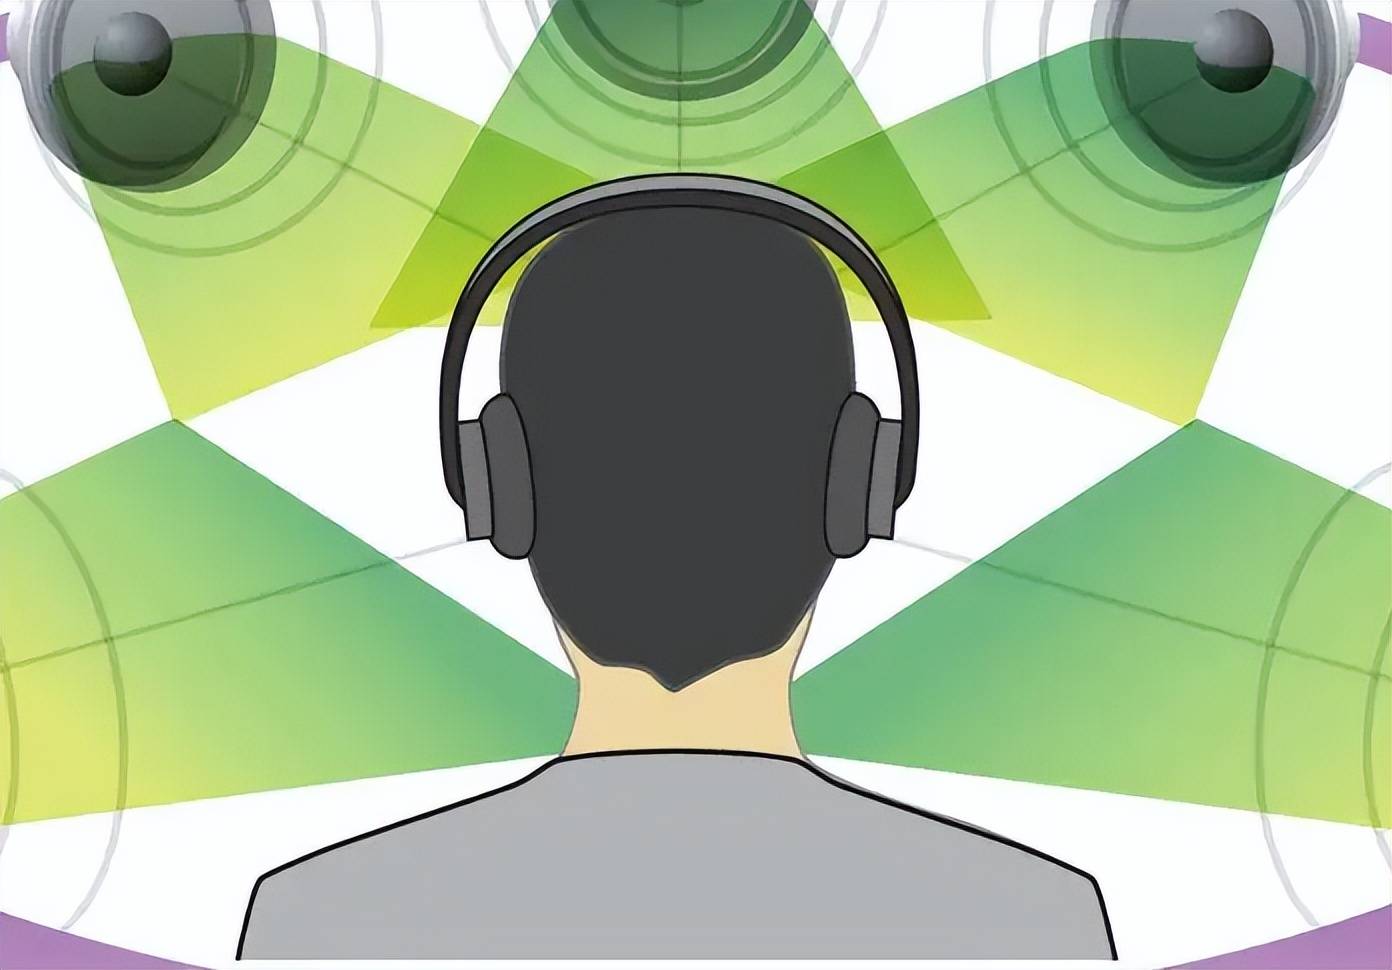 原创             市面上很多7.1声道的耳机，都是虚拟环绕声，但是你知道内涵吗？